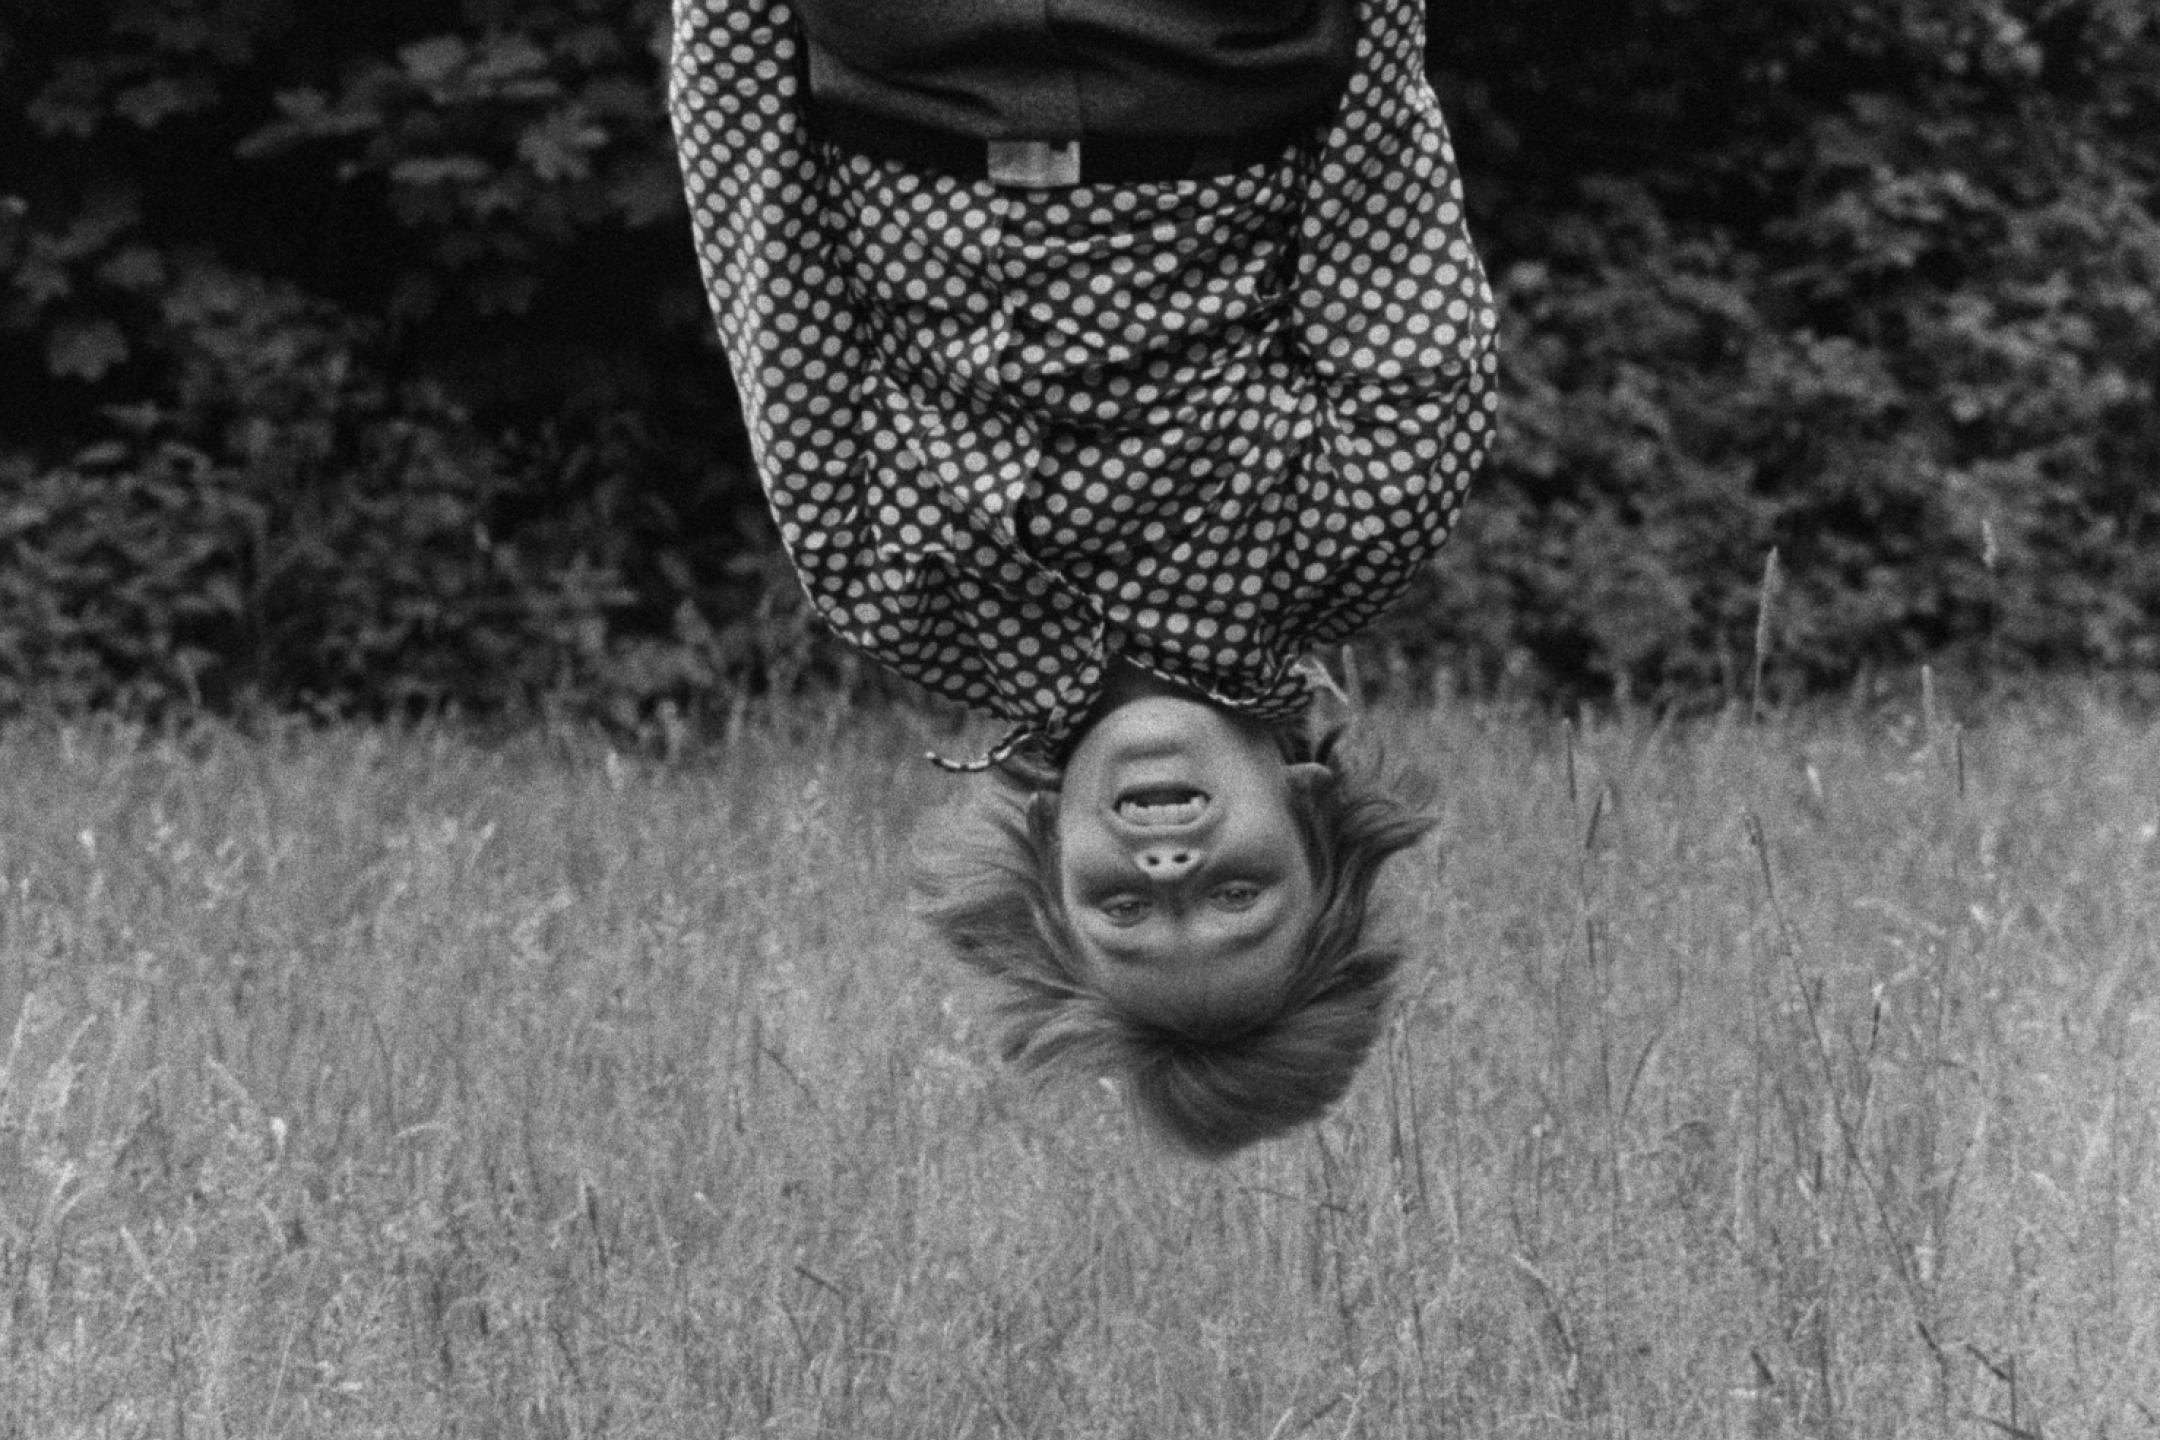 Ein schwarz-weiß Bild, über einem Weizenfeld hängt eine jugendliche Person in einem gepunkteten Hemd kopfüber in das Bild hinein. Die Haare stehen ganz zu Berge, sie lacht ausgelassen